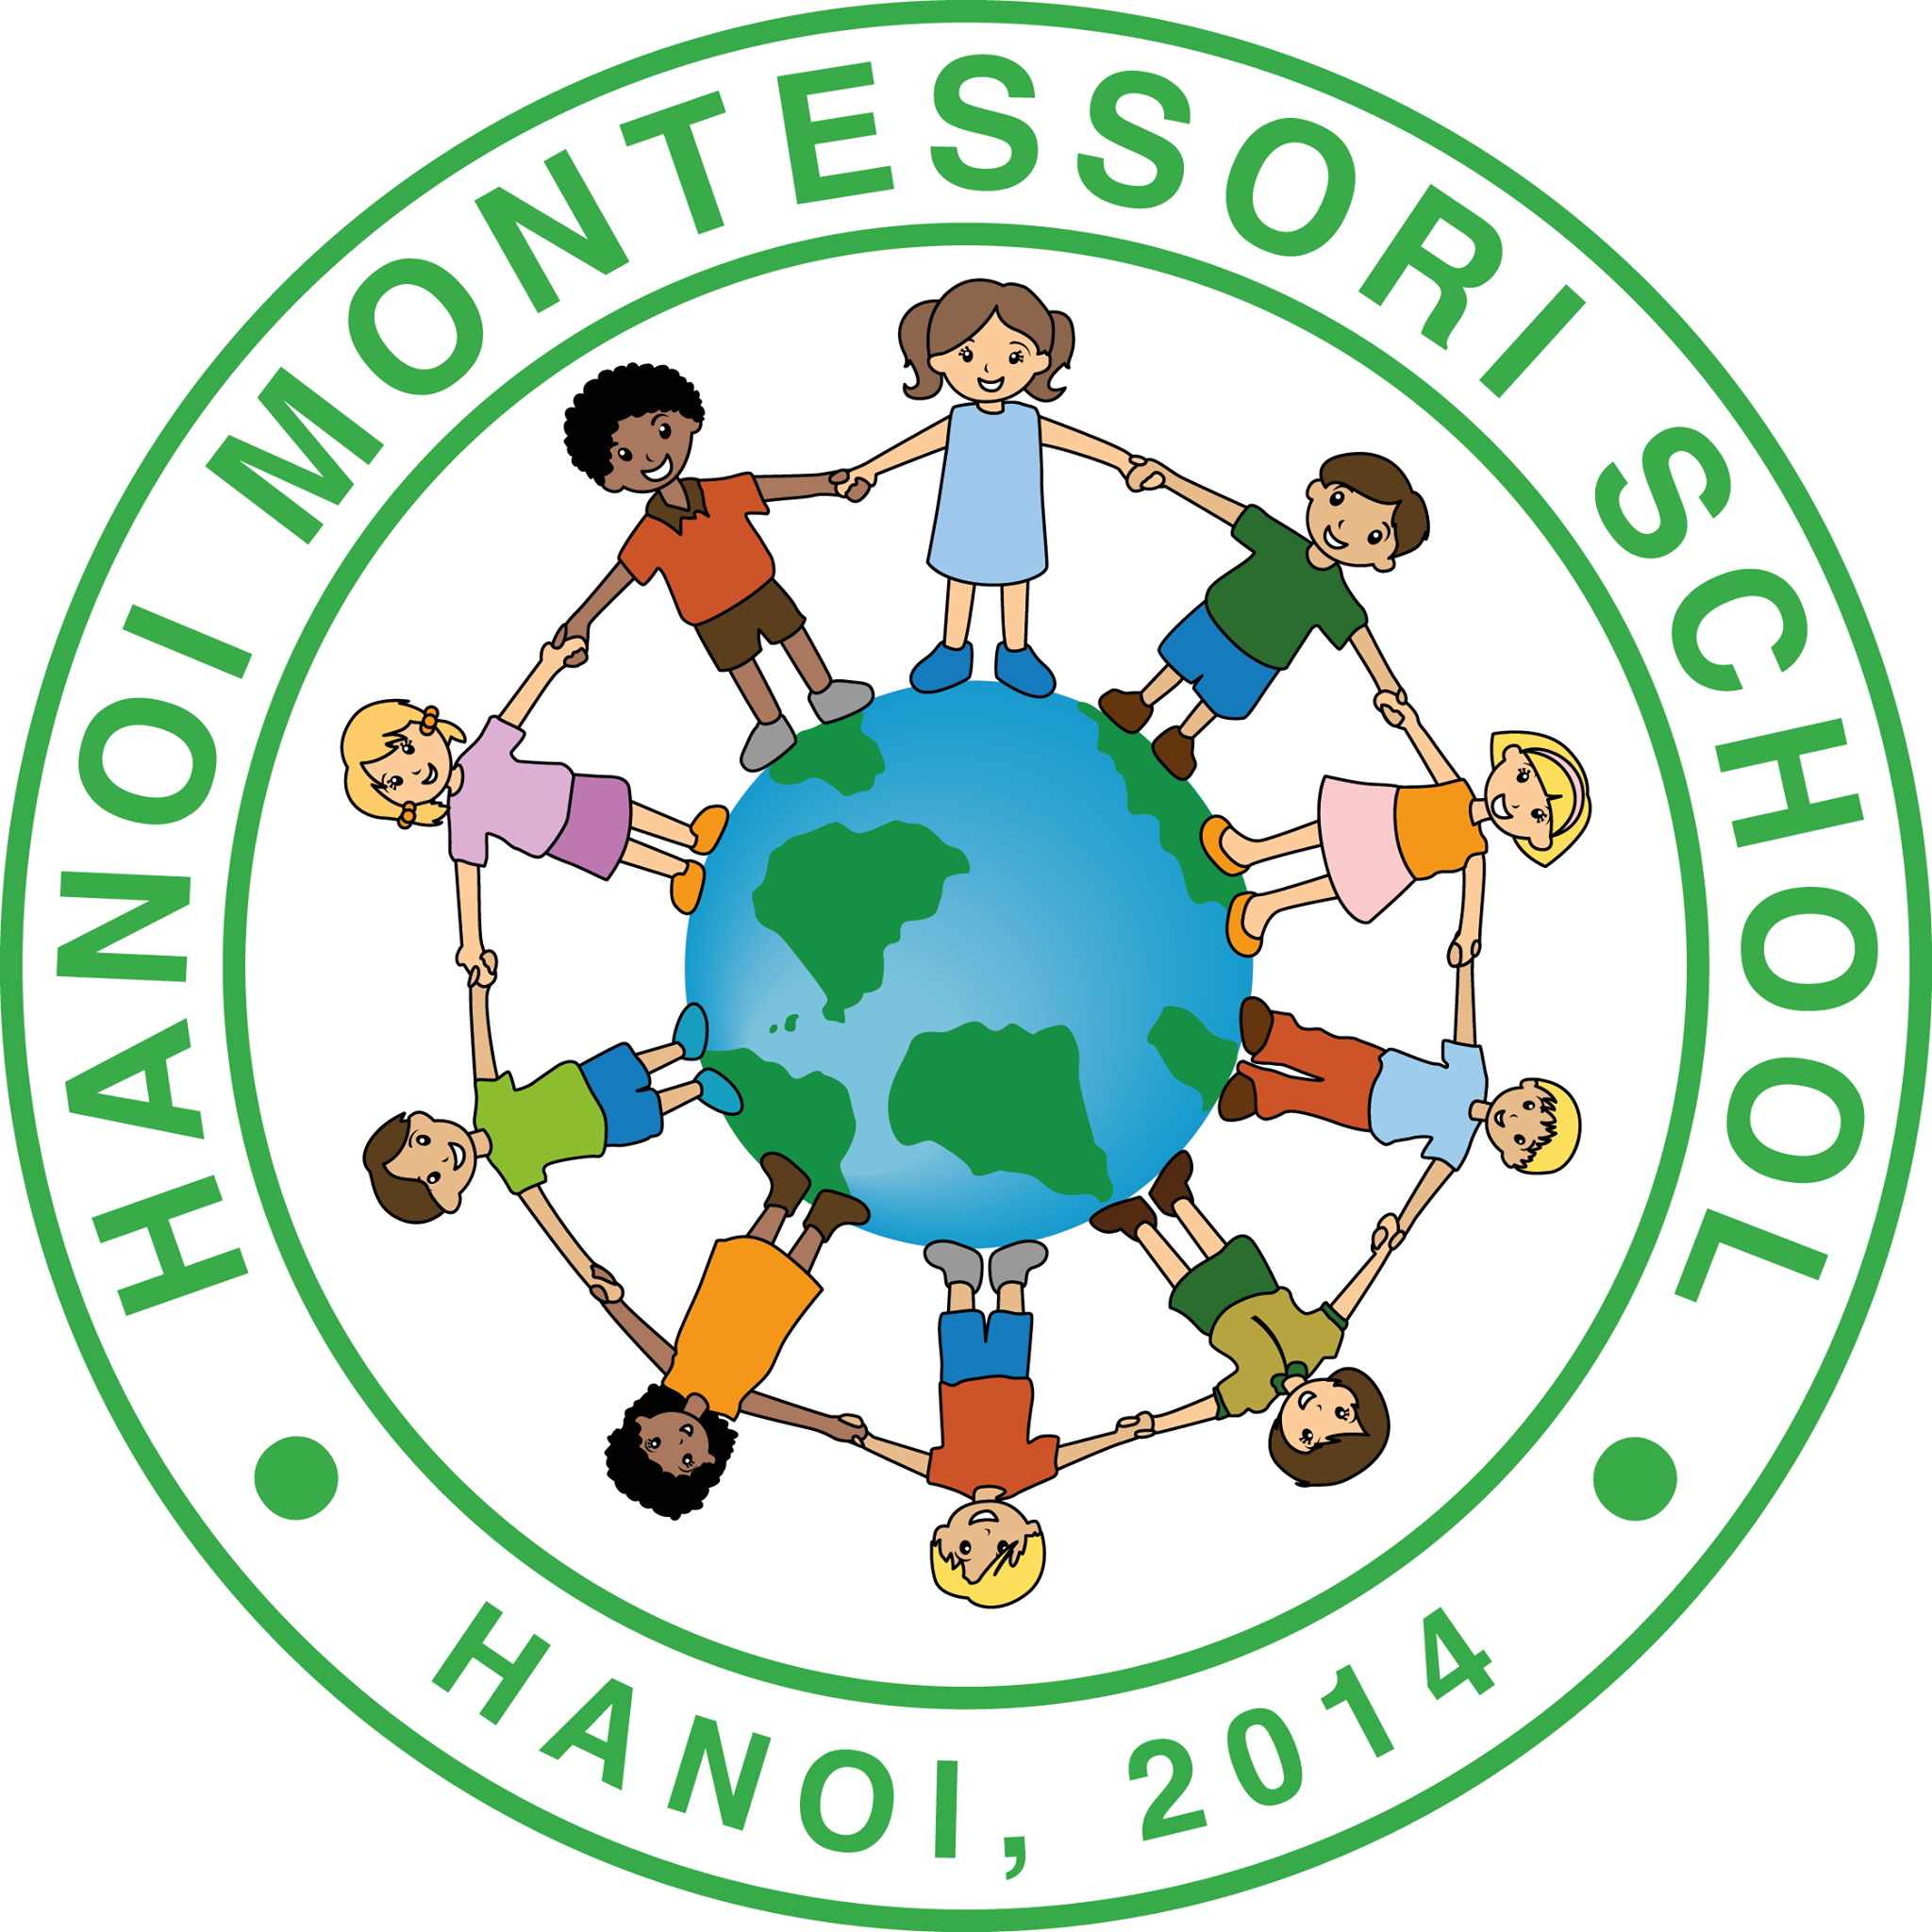 Trường mầm non Hà Nội Montessori